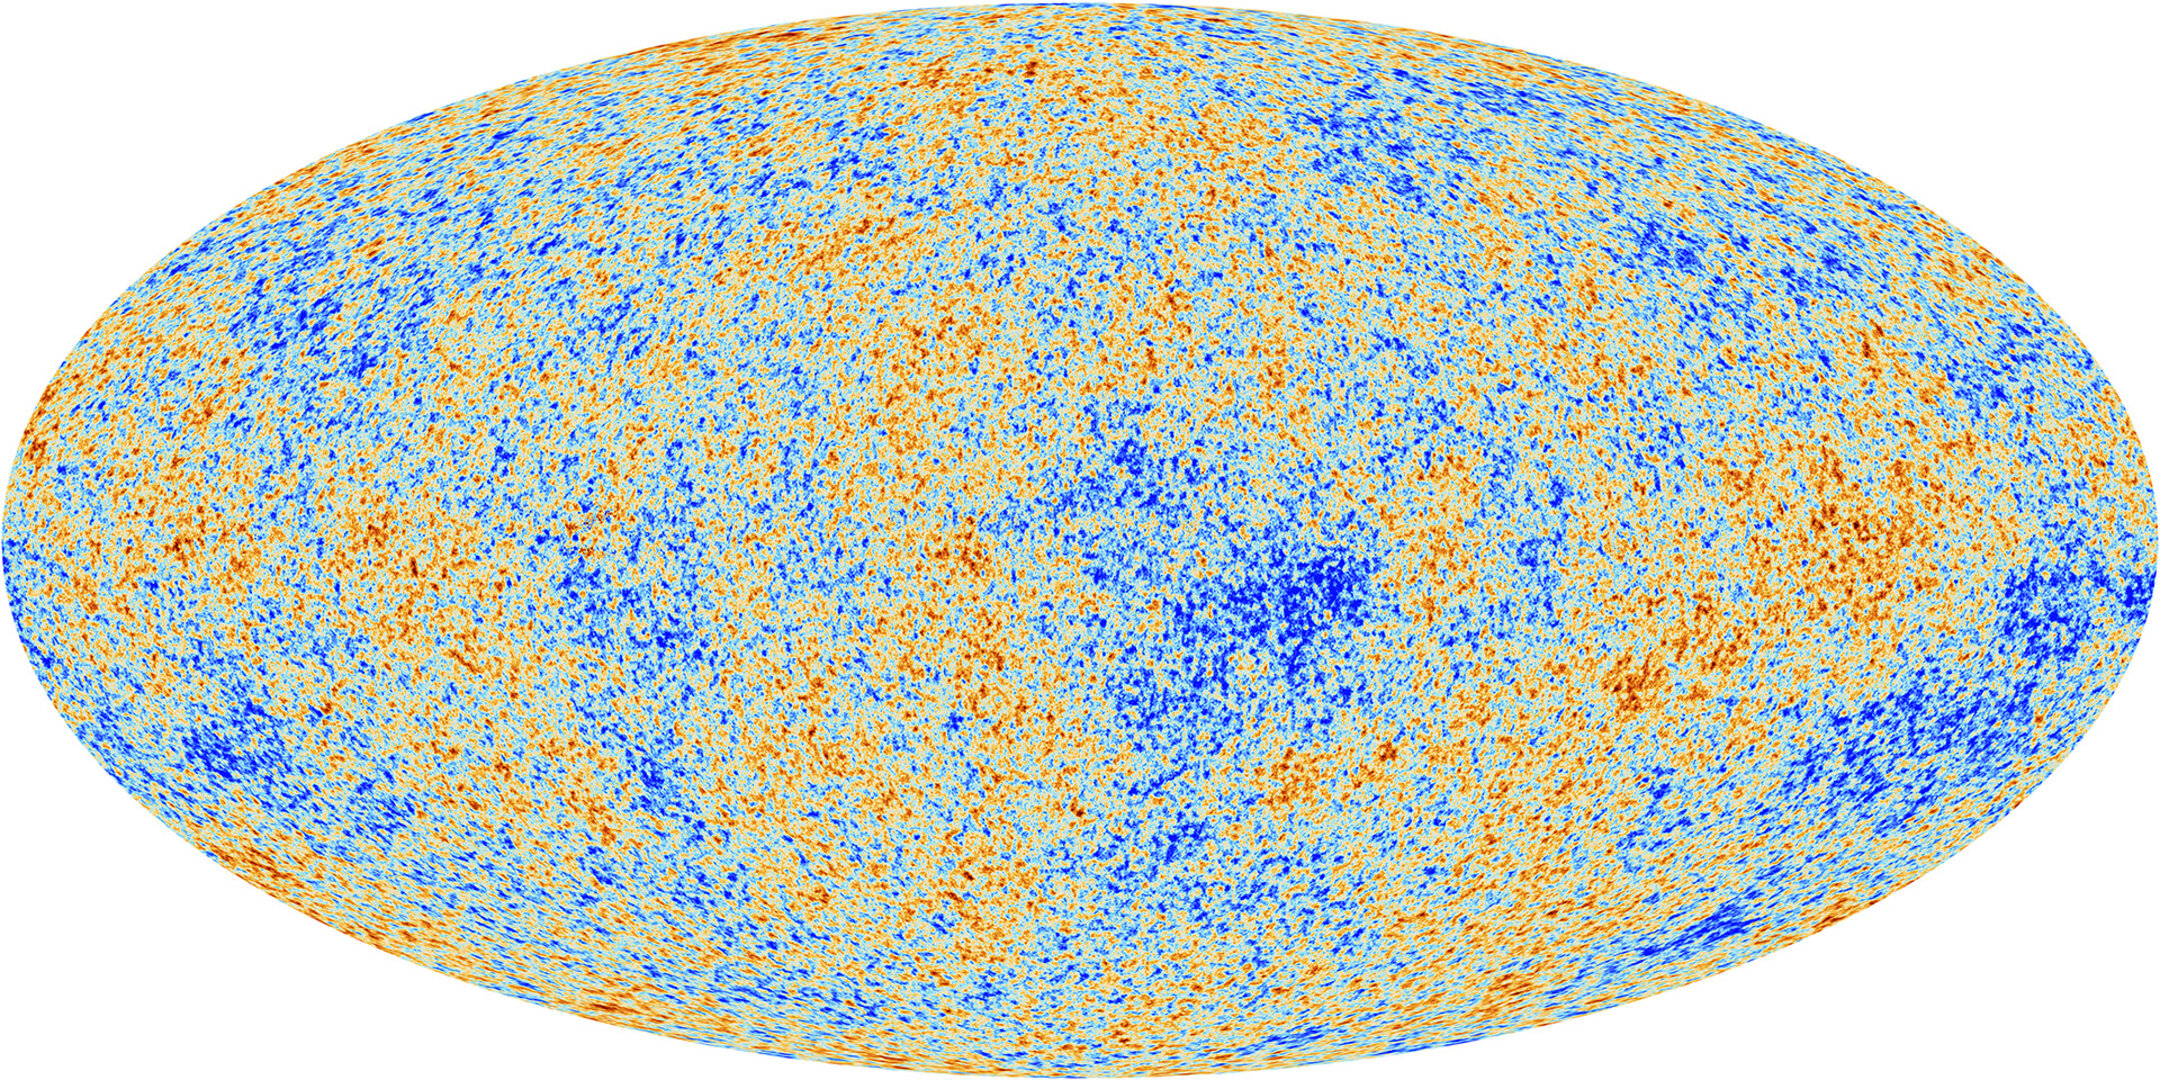 El fondo cósmico de microondas desvelado por Planck